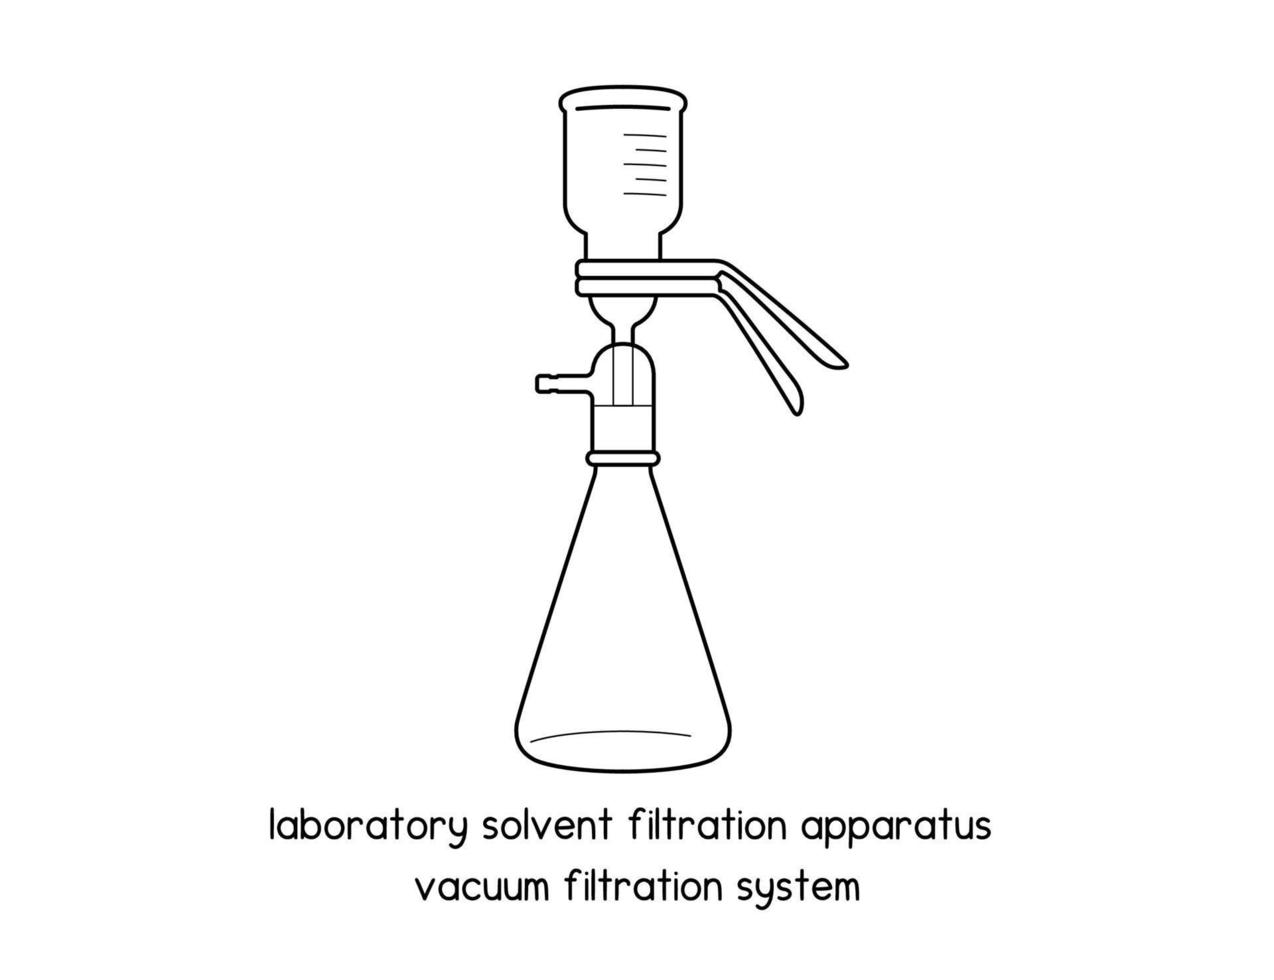 apparato di filtrazione del solvente da laboratorio diagramma del sistema di filtrazione sotto vuoto per l'impostazione dell'esperimento illustrazione vettoriale del profilo del laboratorio